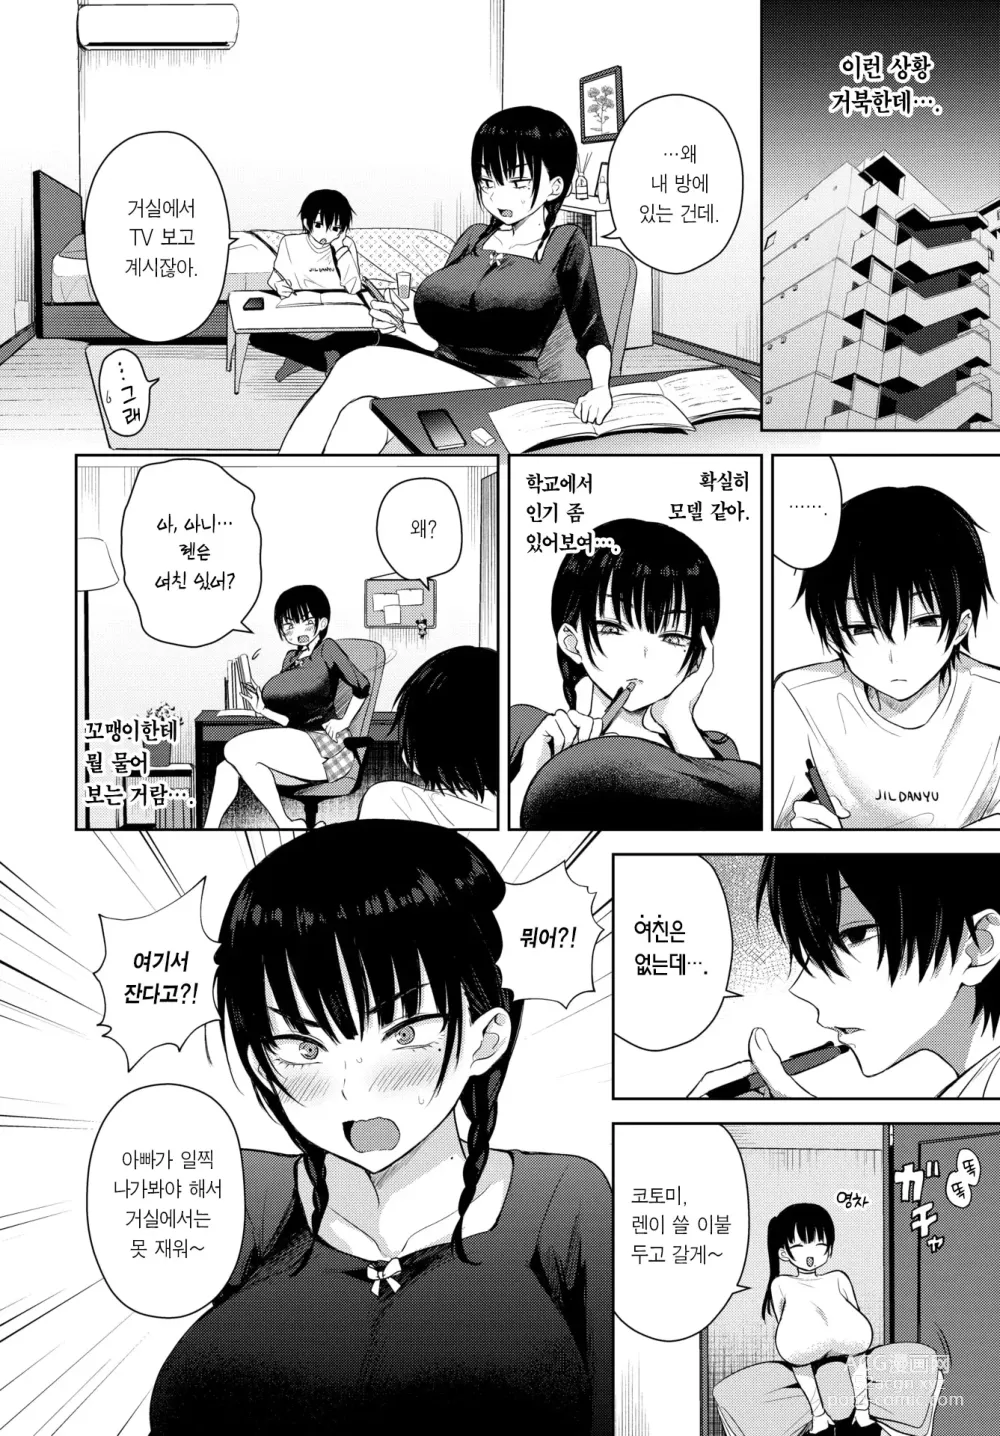 Page 3 of manga 7 Days